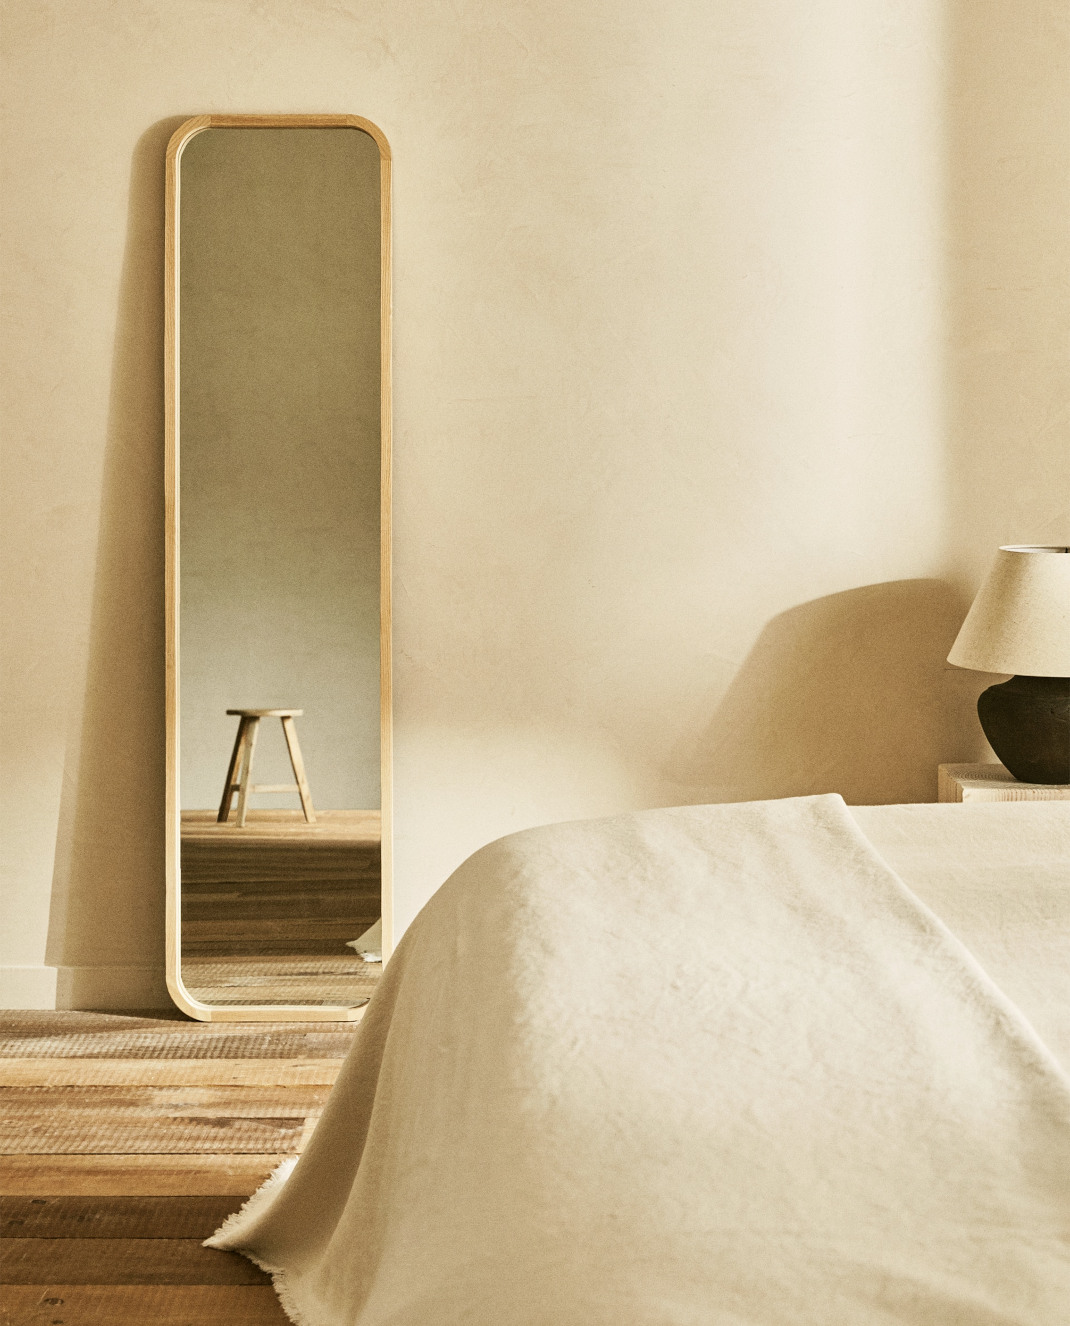 Ο στιλάτος και μοντέρνος καθρέπτης από τα Zara Home που θα ομορφύνει την κρεβατοκάμαρά σου